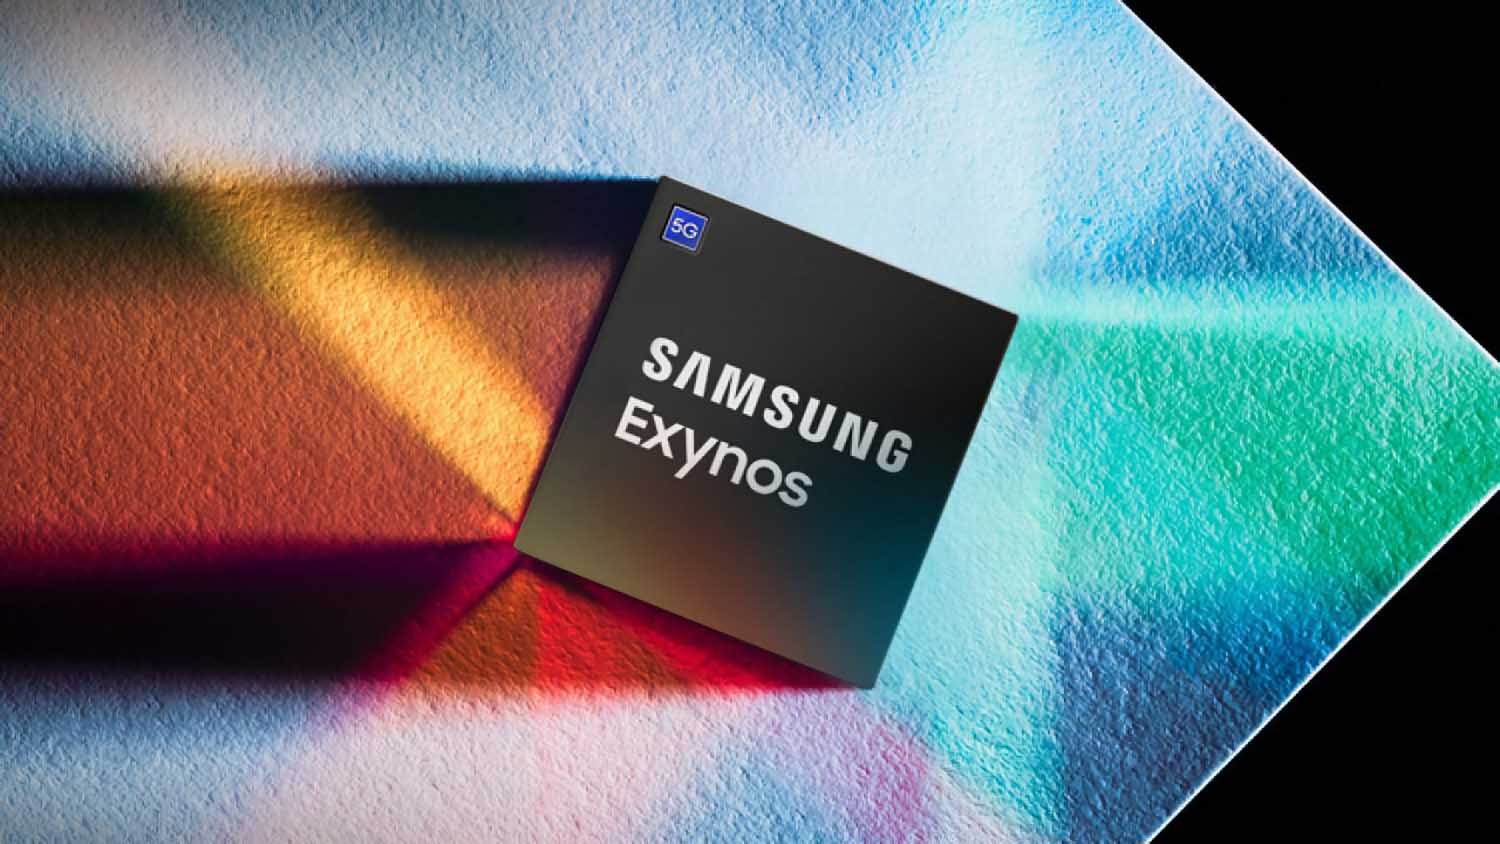 Samsung спростувала чутки про припинення виробництва чипів Exynos. Компанія працює над процесором преміум-класу для Galaxy S